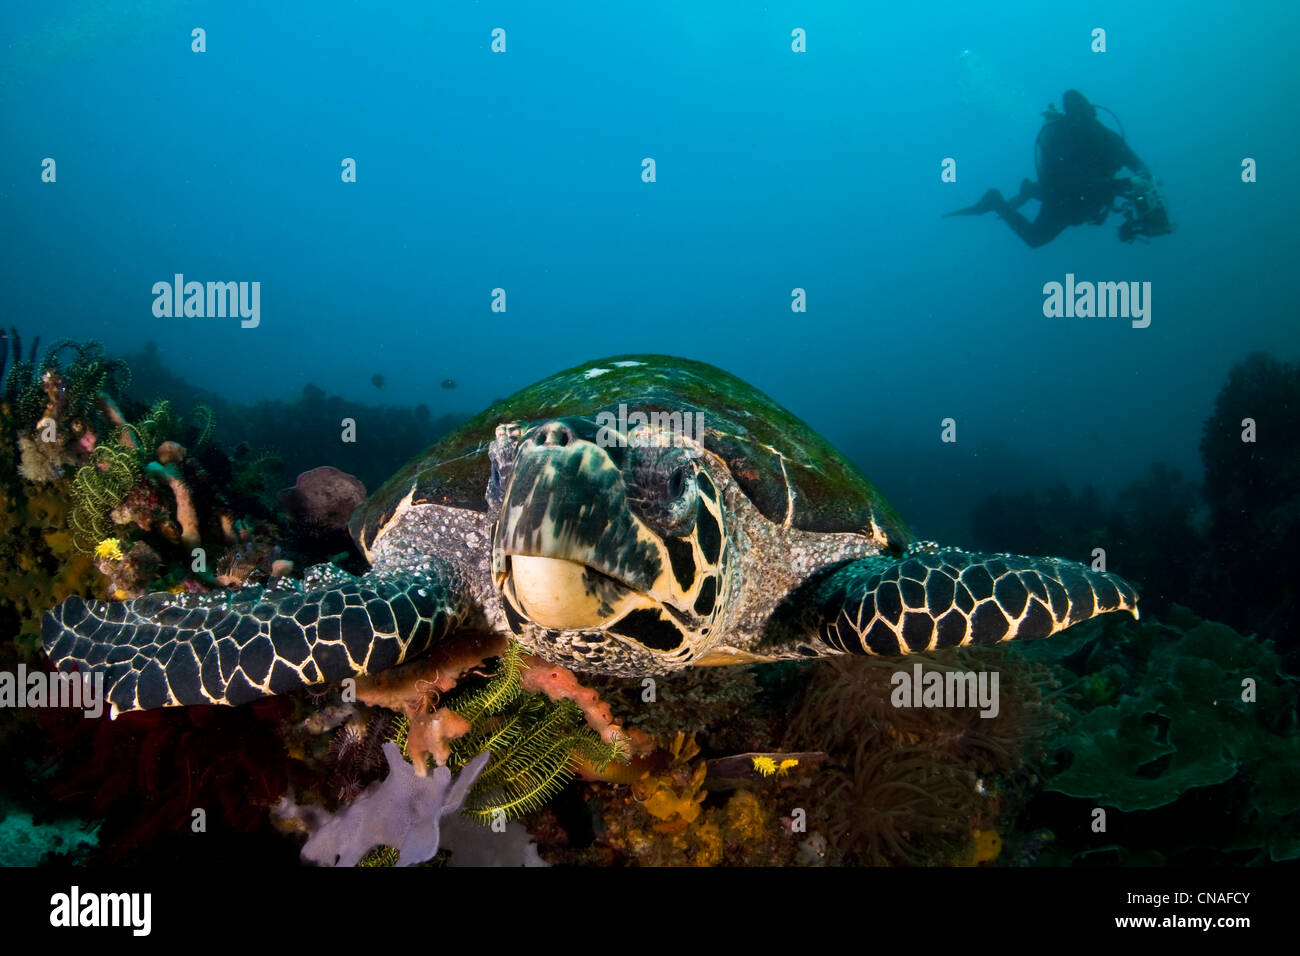 La tortuga carey, Eretmochelys imbricata, crecimiento de algas en su caparazón, nadando a través de diversos arrecifes de coral. Horseshoe Bay. Foto de stock